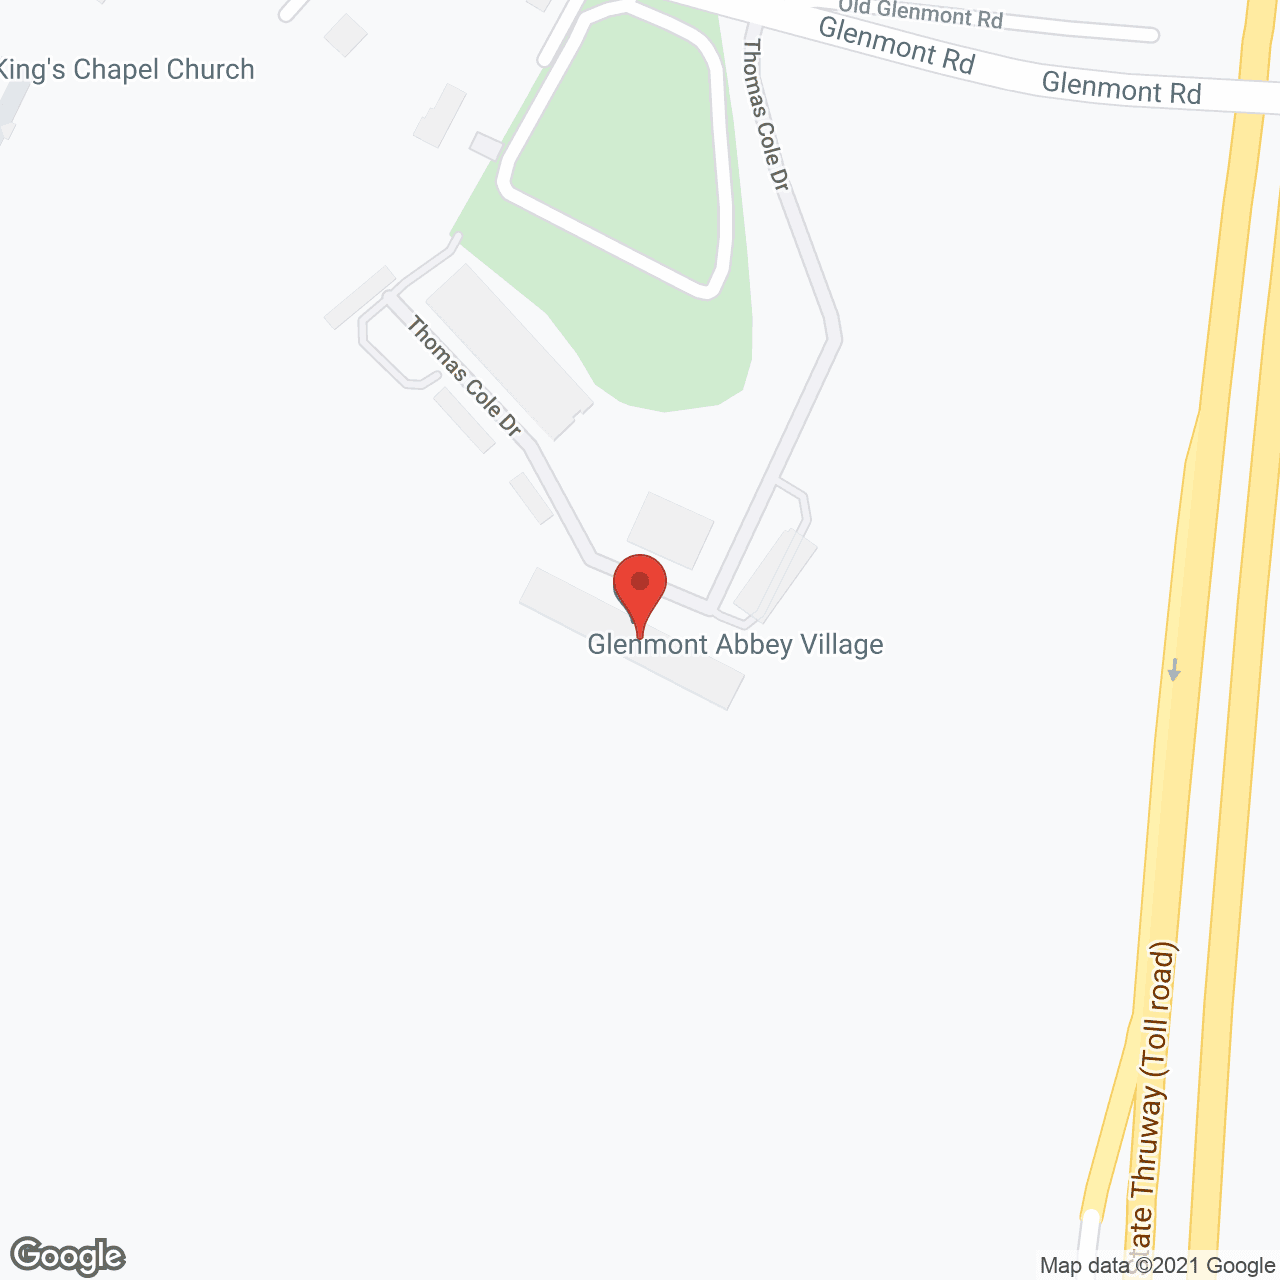 Glenmont Abbey Village in google map